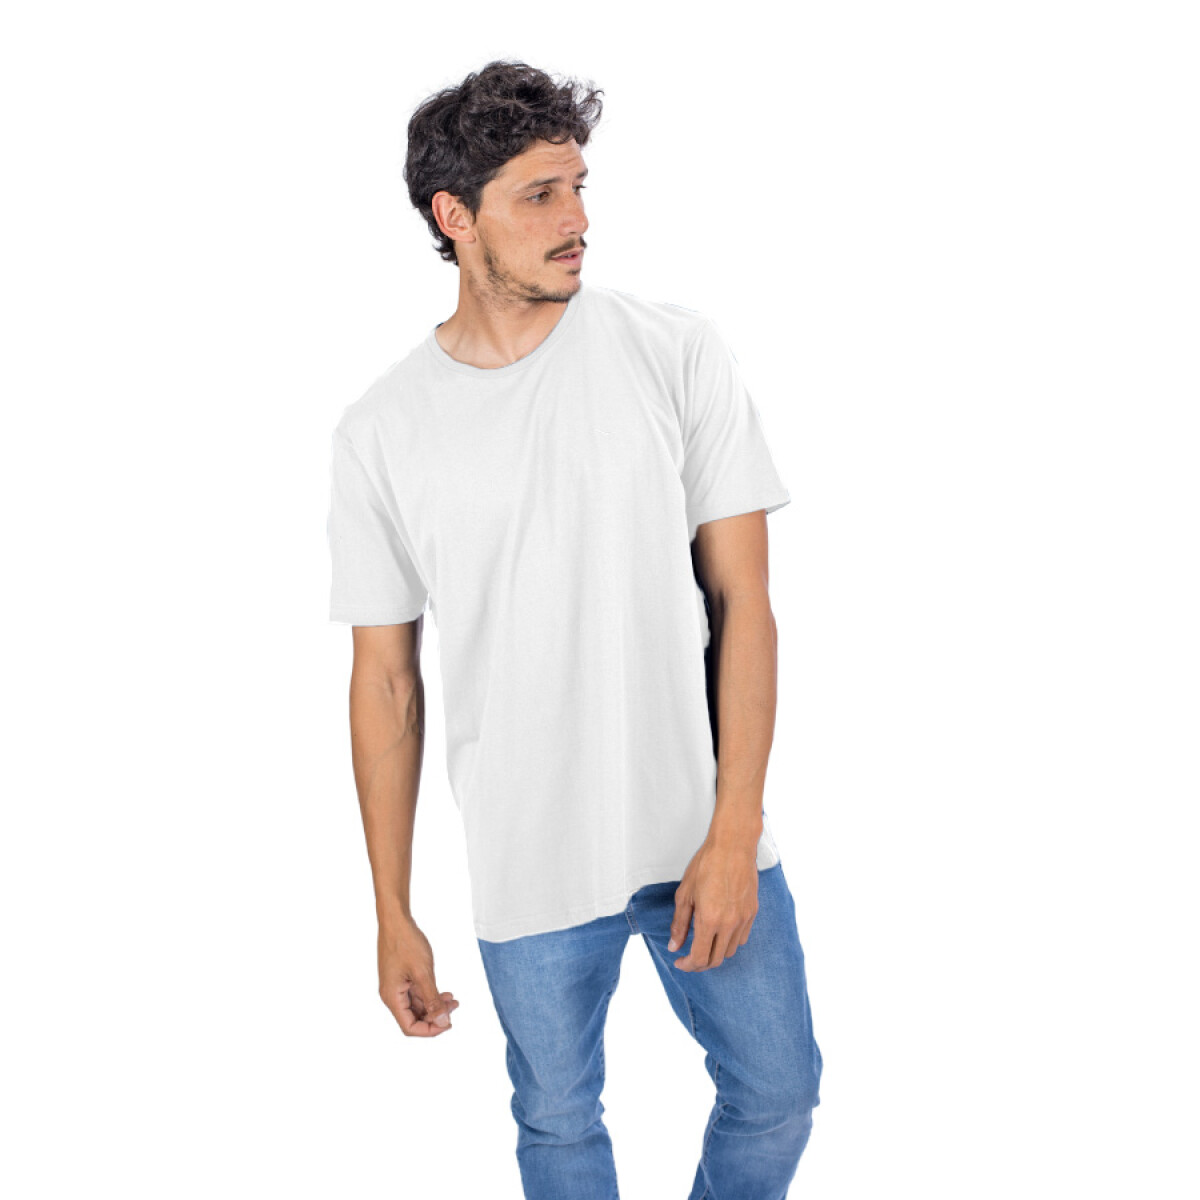 Camiseta de Hombre Blanca - BLANCO 